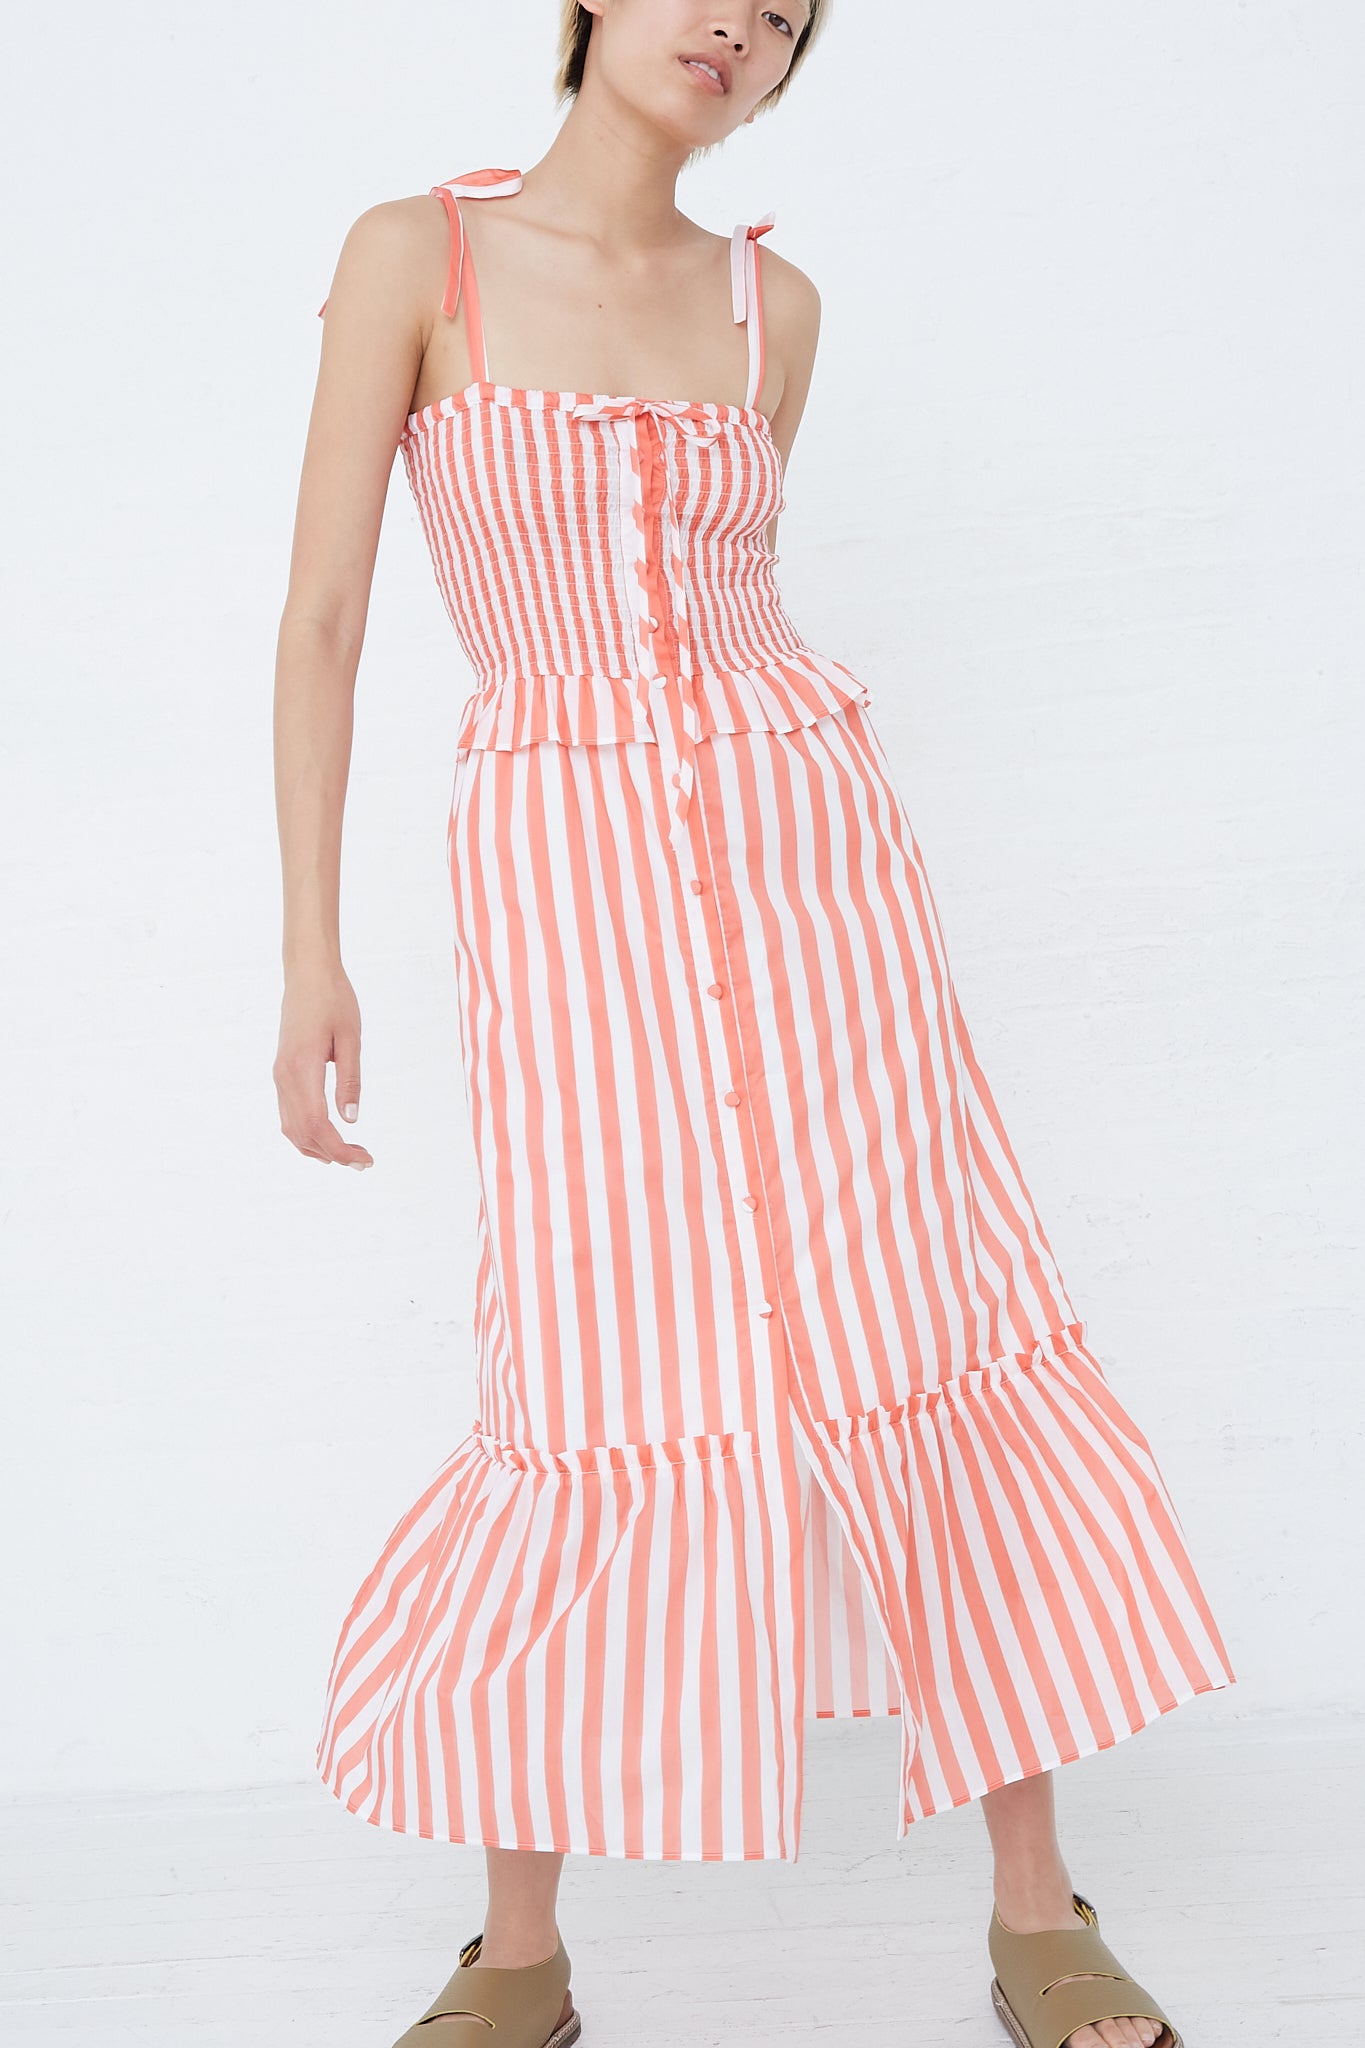 Alberica Dress in Coral Stripe